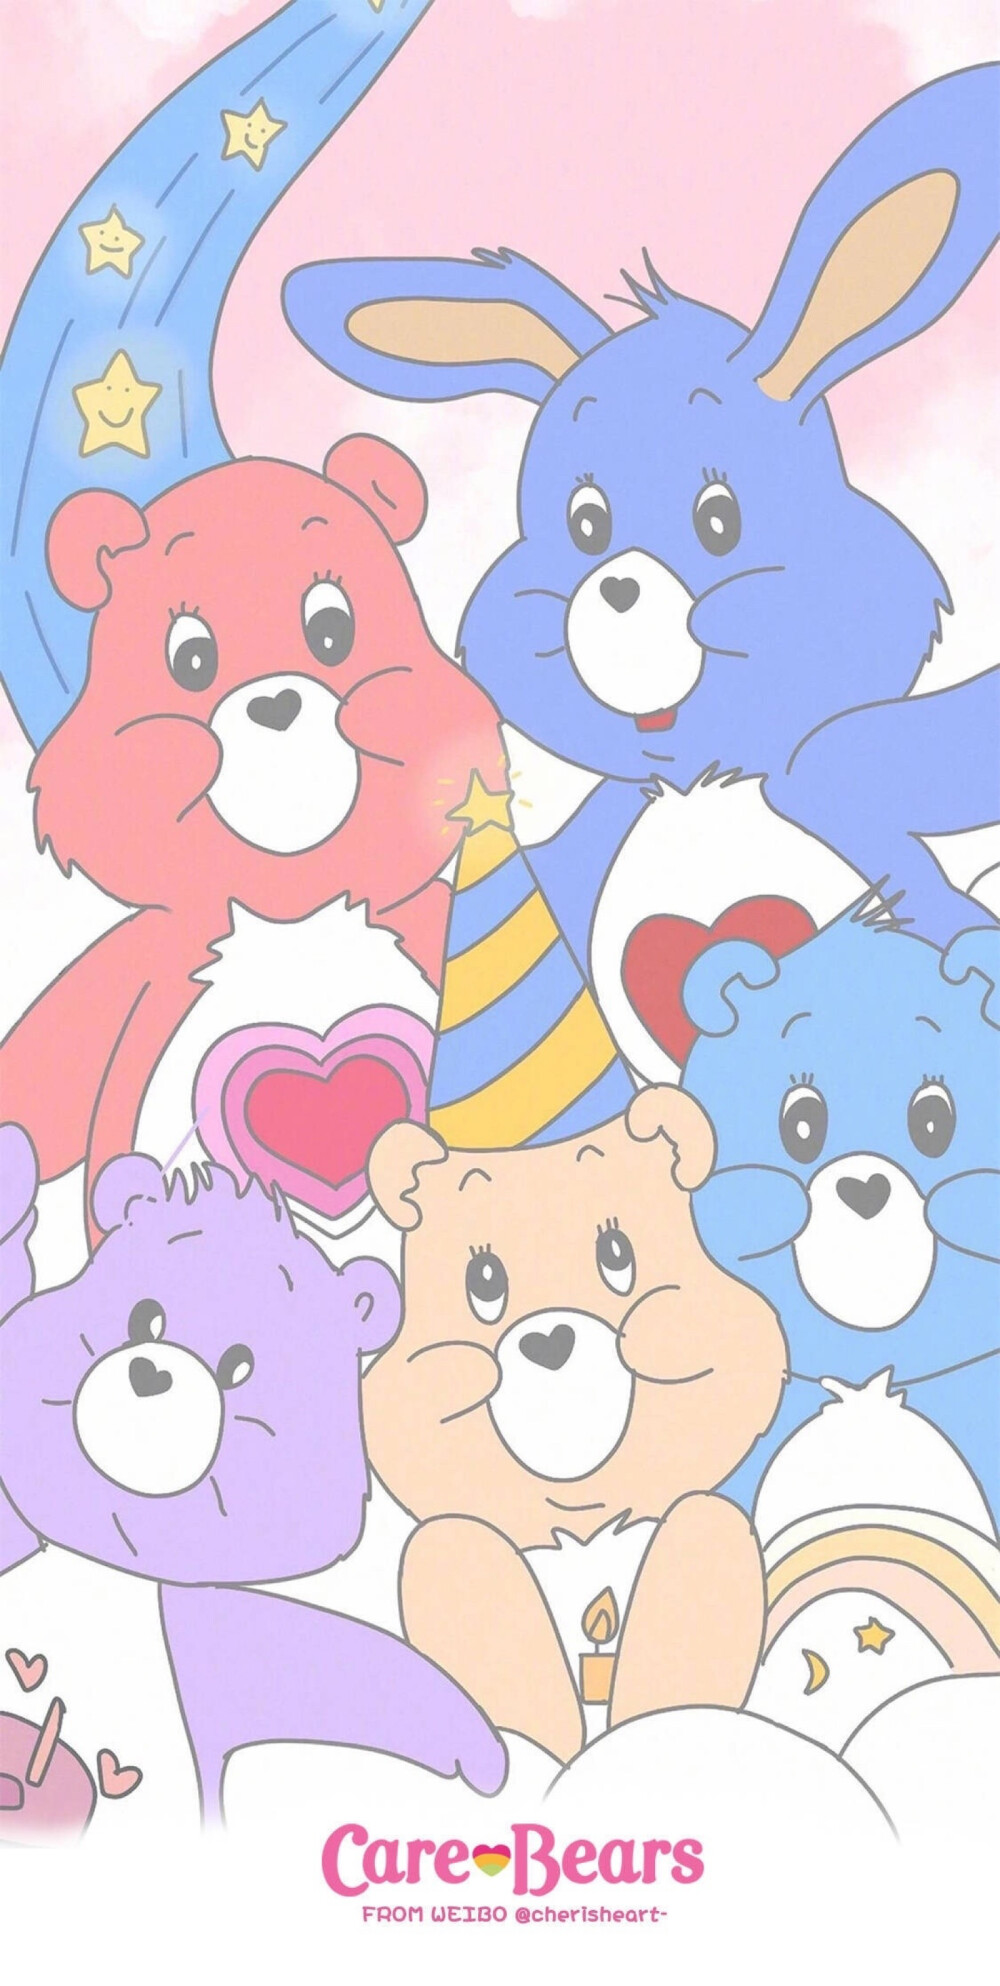 彩虹熊壁纸 Care Bears壁纸